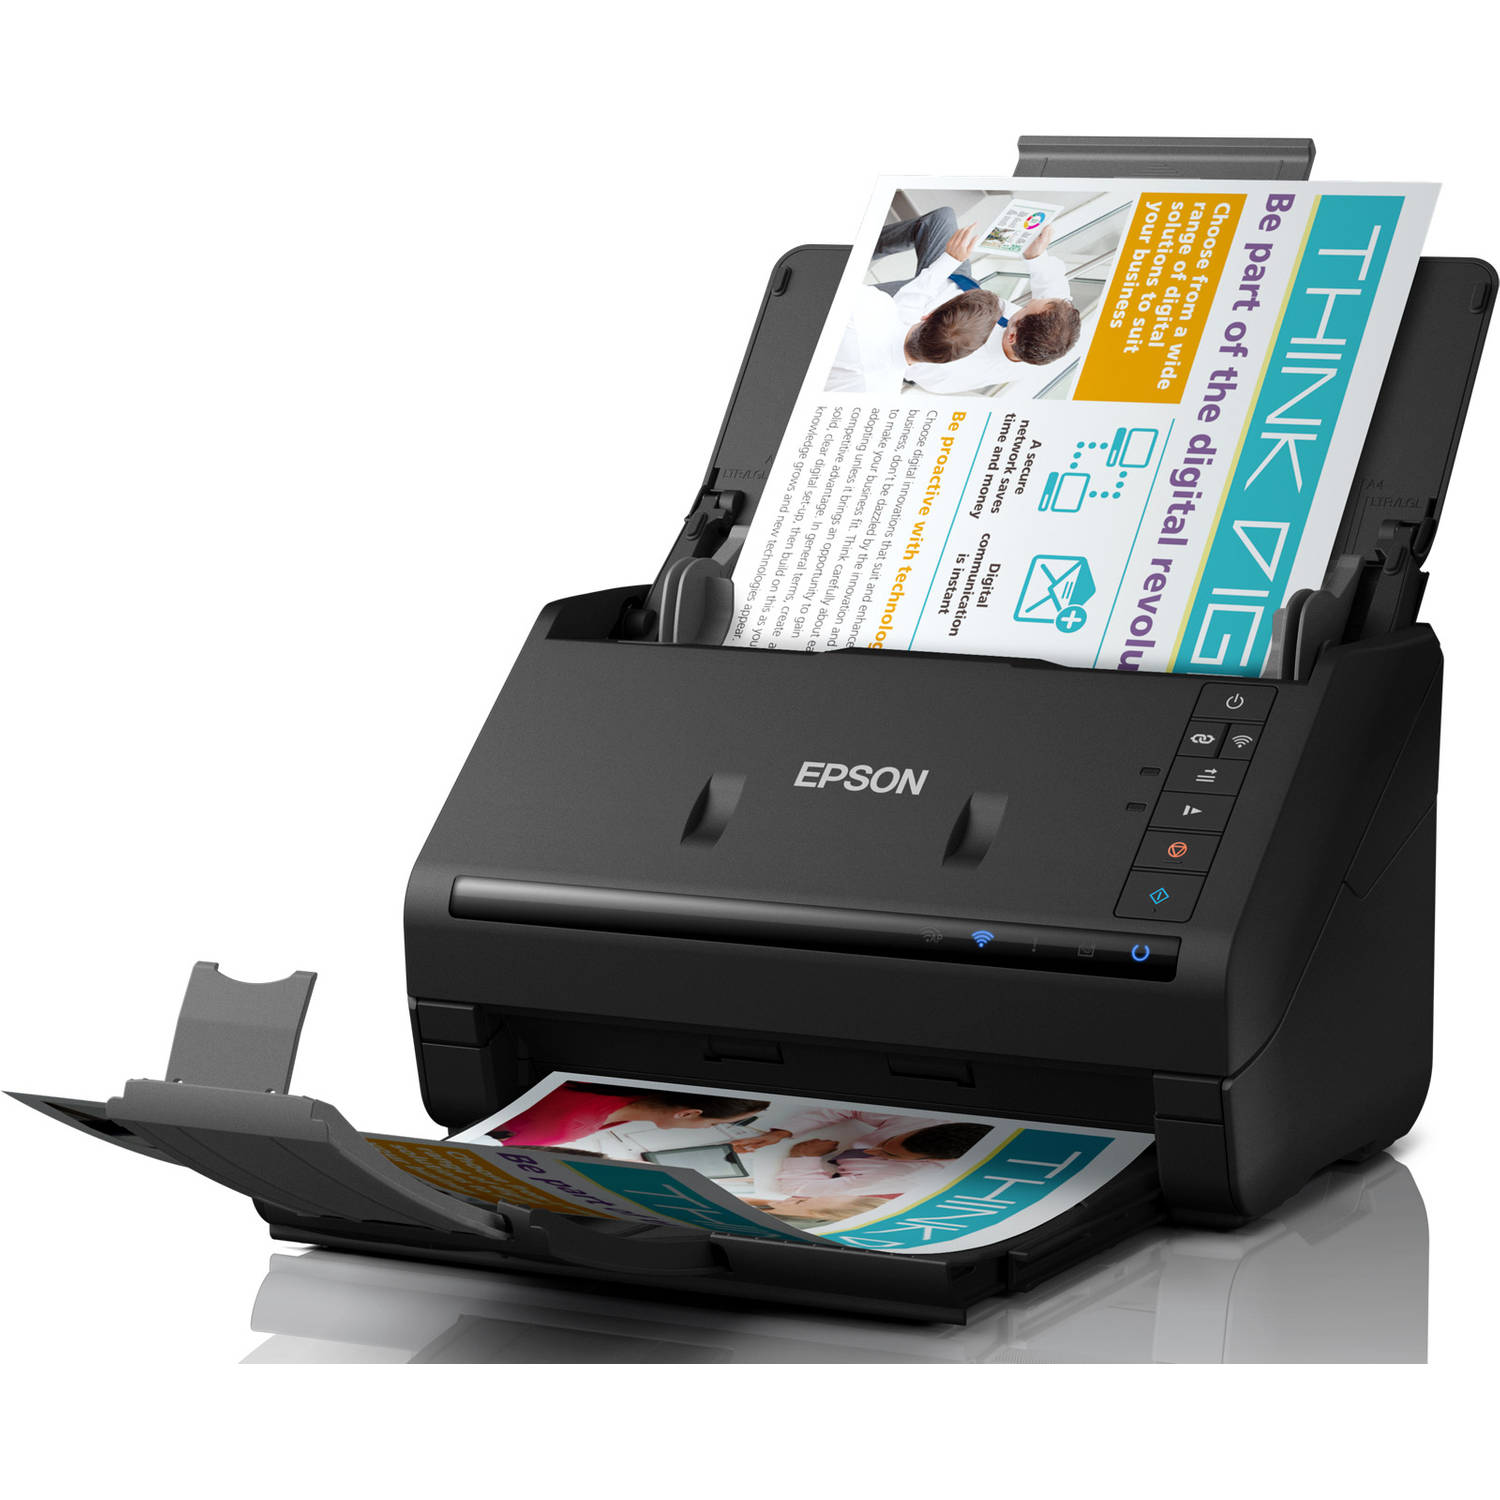 Katholiek scheidsrechter Aanvrager Epson all-in-one printer WorkForce ES-500WII | Blokker